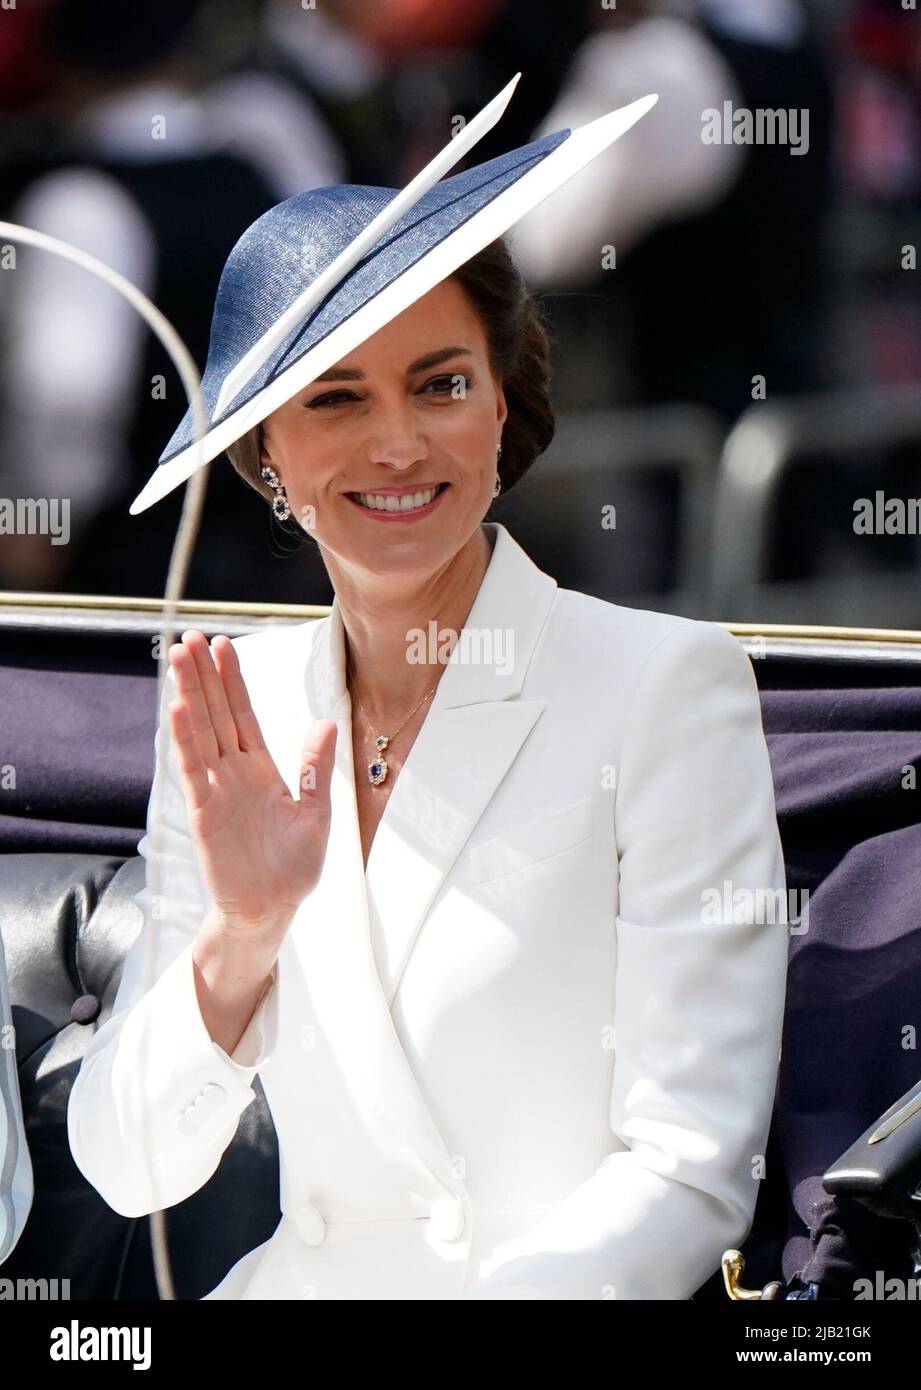 Die Herzogin von Cambridge fährt in einer Kutsche, während die königliche Prozession den Buckingham Palace zur Trooping the Color-Zeremonie bei der Horse Guards Parade im Zentrum von London verlässt, während die Königin am ersten Tag des Platin-Jubiläums ihren offiziellen Geburtstag feiert. Bilddatum: Donnerstag, 2. Juni 2022. Stockfoto